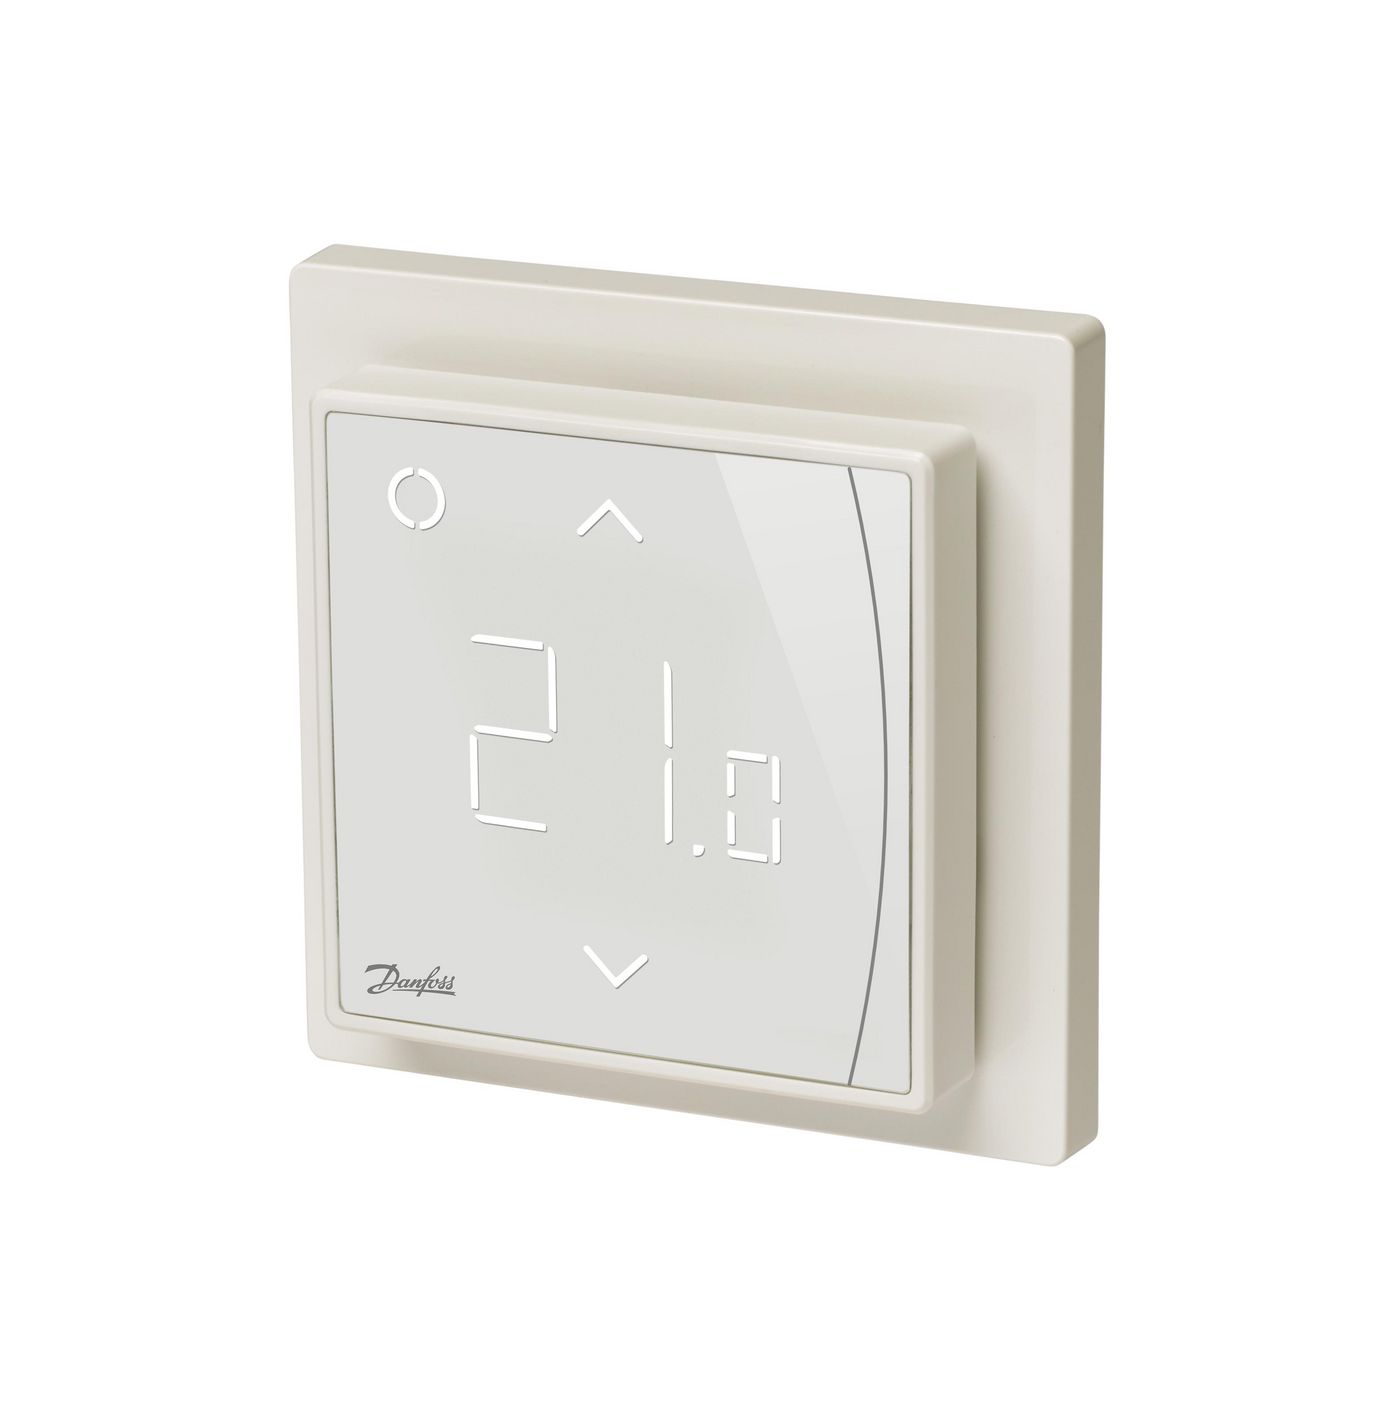 Thermostats Danfoss Ectemp Smart Pure White Sensor Room + Floor 16 A